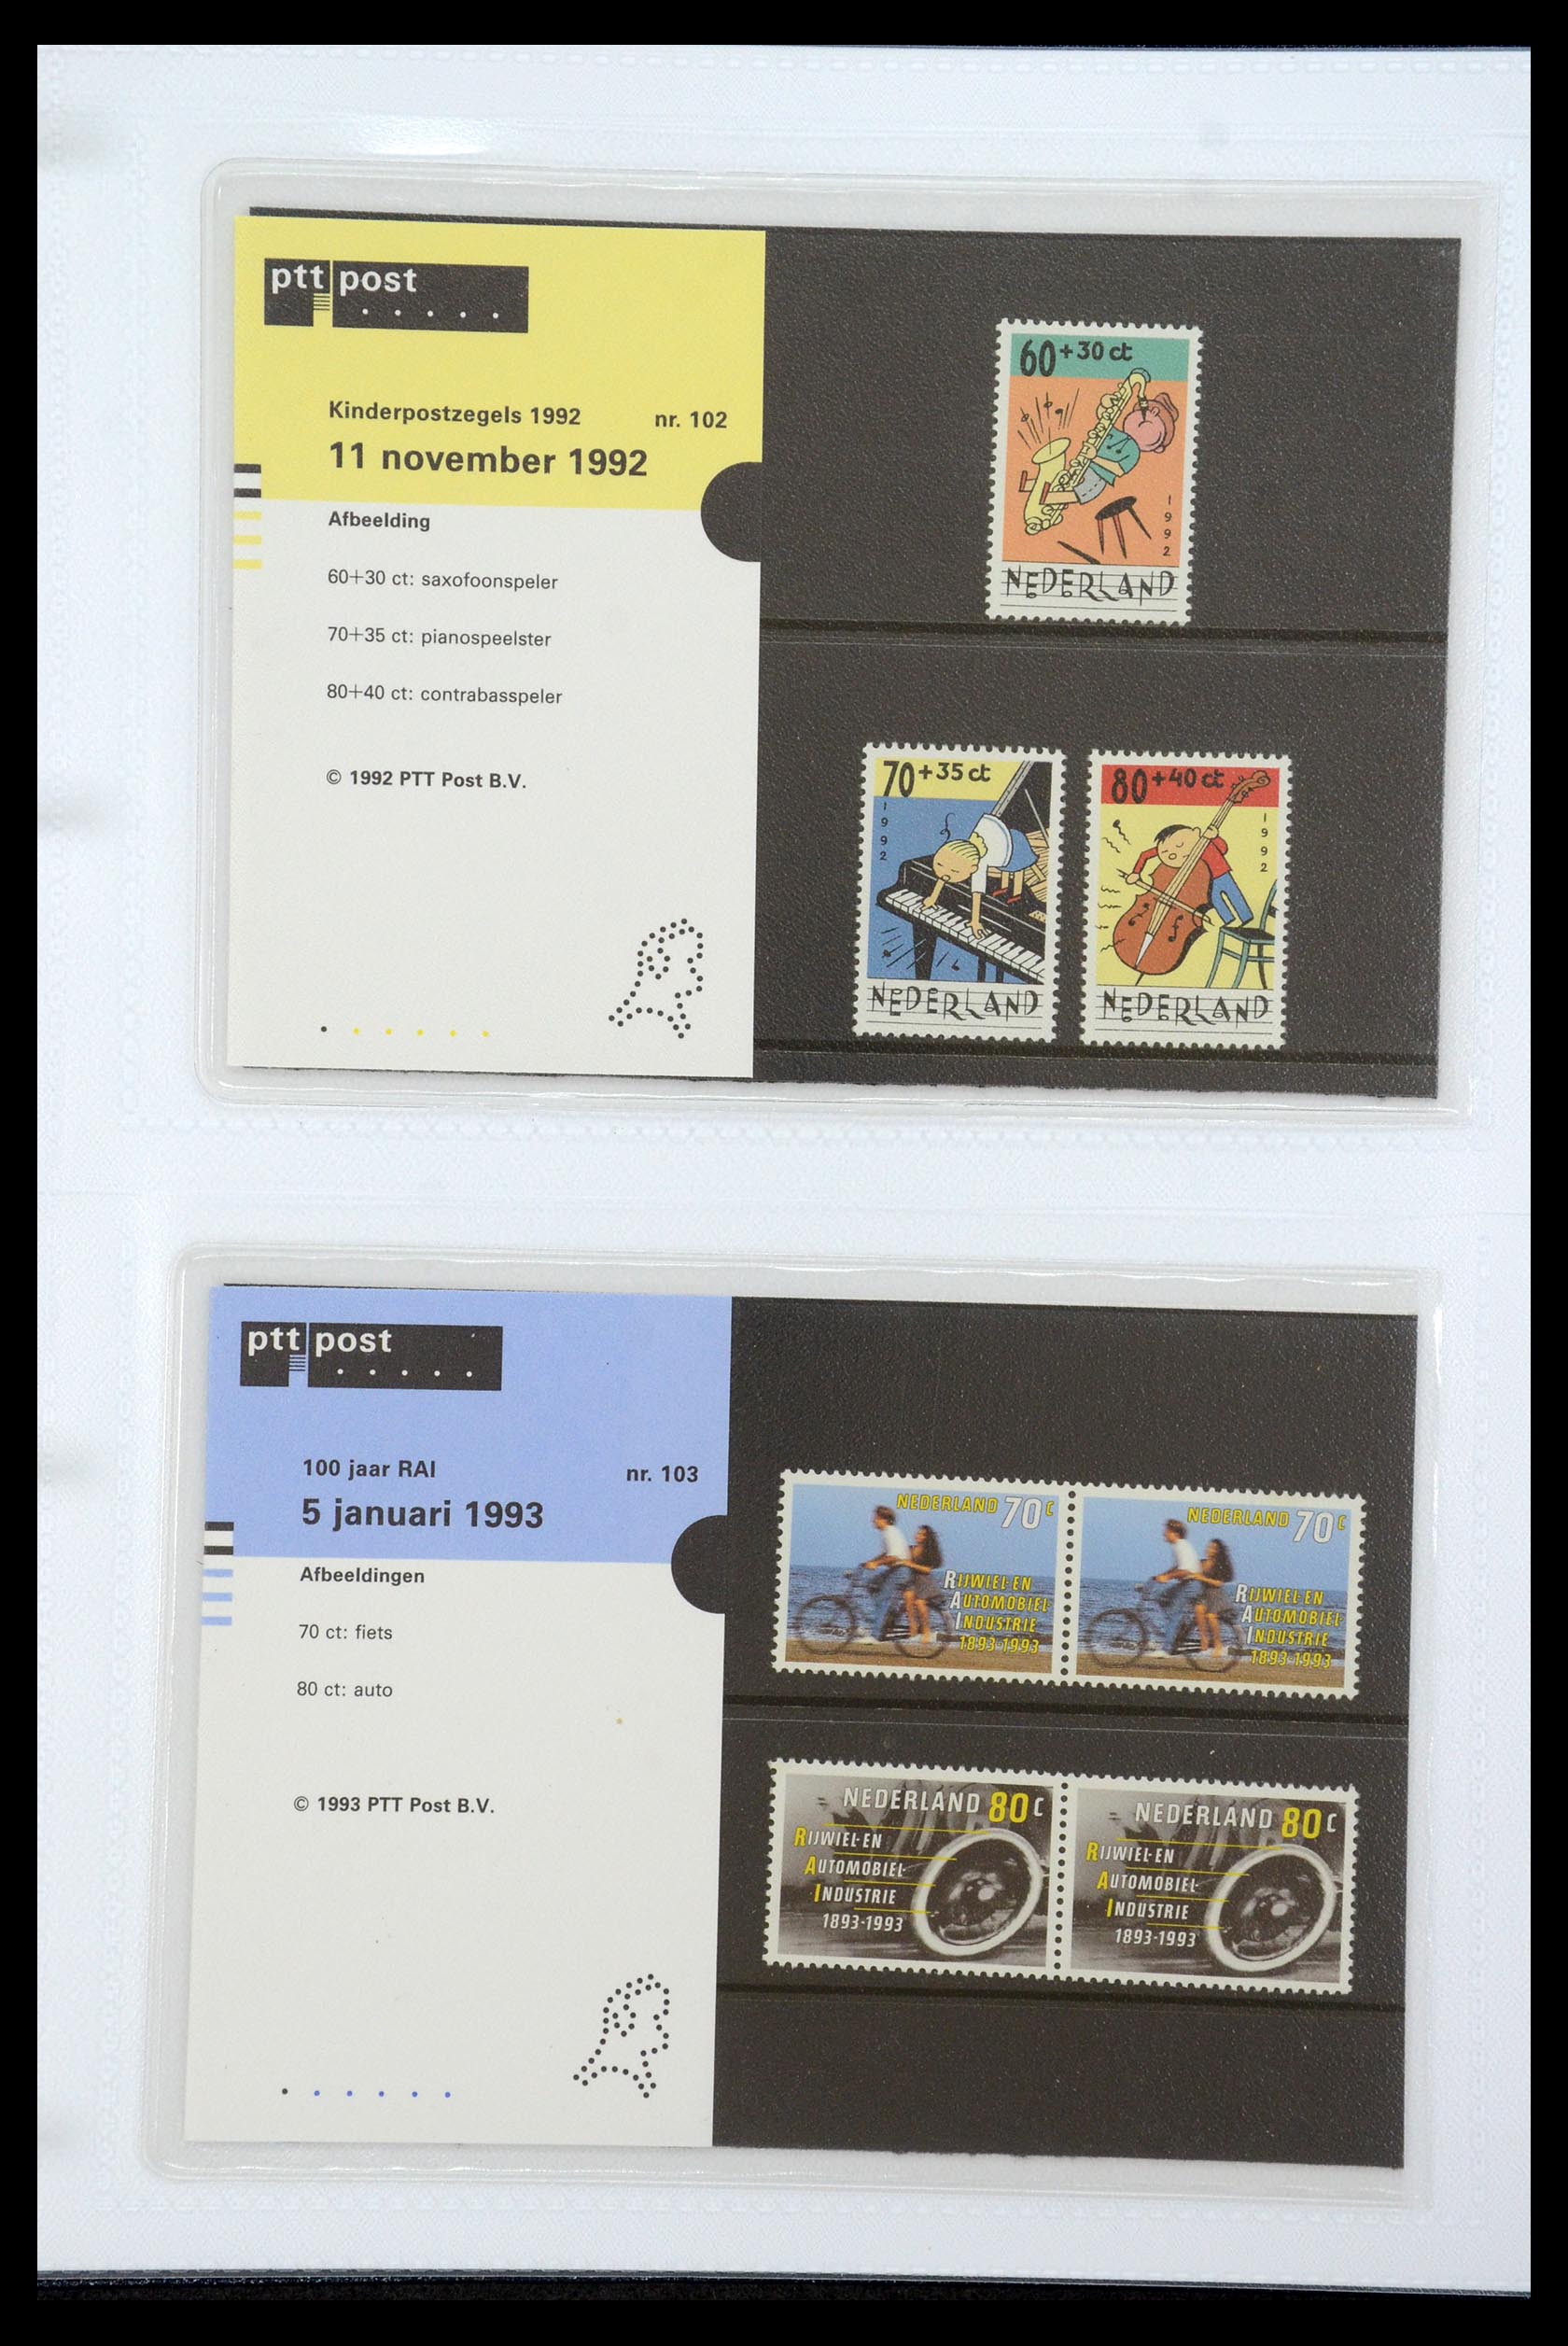 35947 053 - Stamp Collection 35947 Netherlands PTT presentation packs 1982-2019!